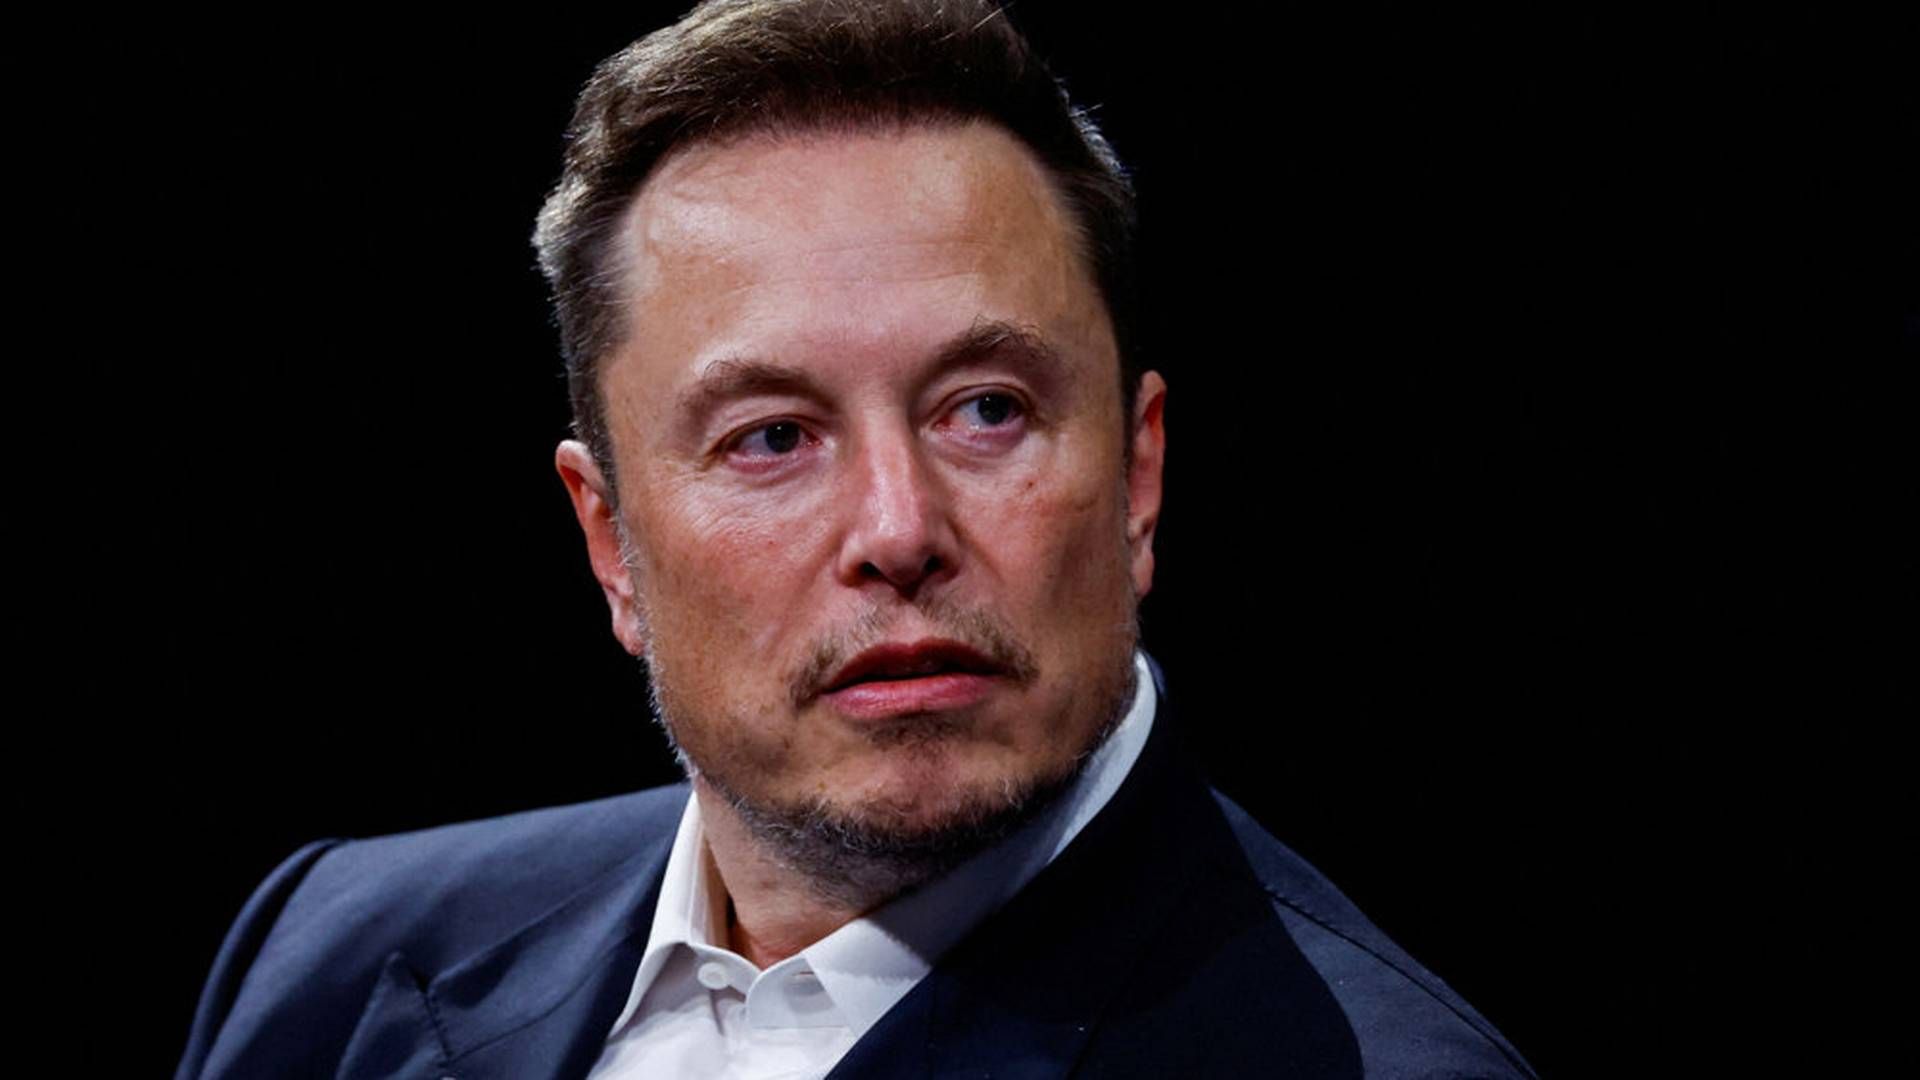 Den omdiskuterede erhvervsmand Elon Musk er også direktør for elbilselskabet Tesla og rumfartsselskabet SpaceX. | Foto: Gonzalo Fuentes/Reuters